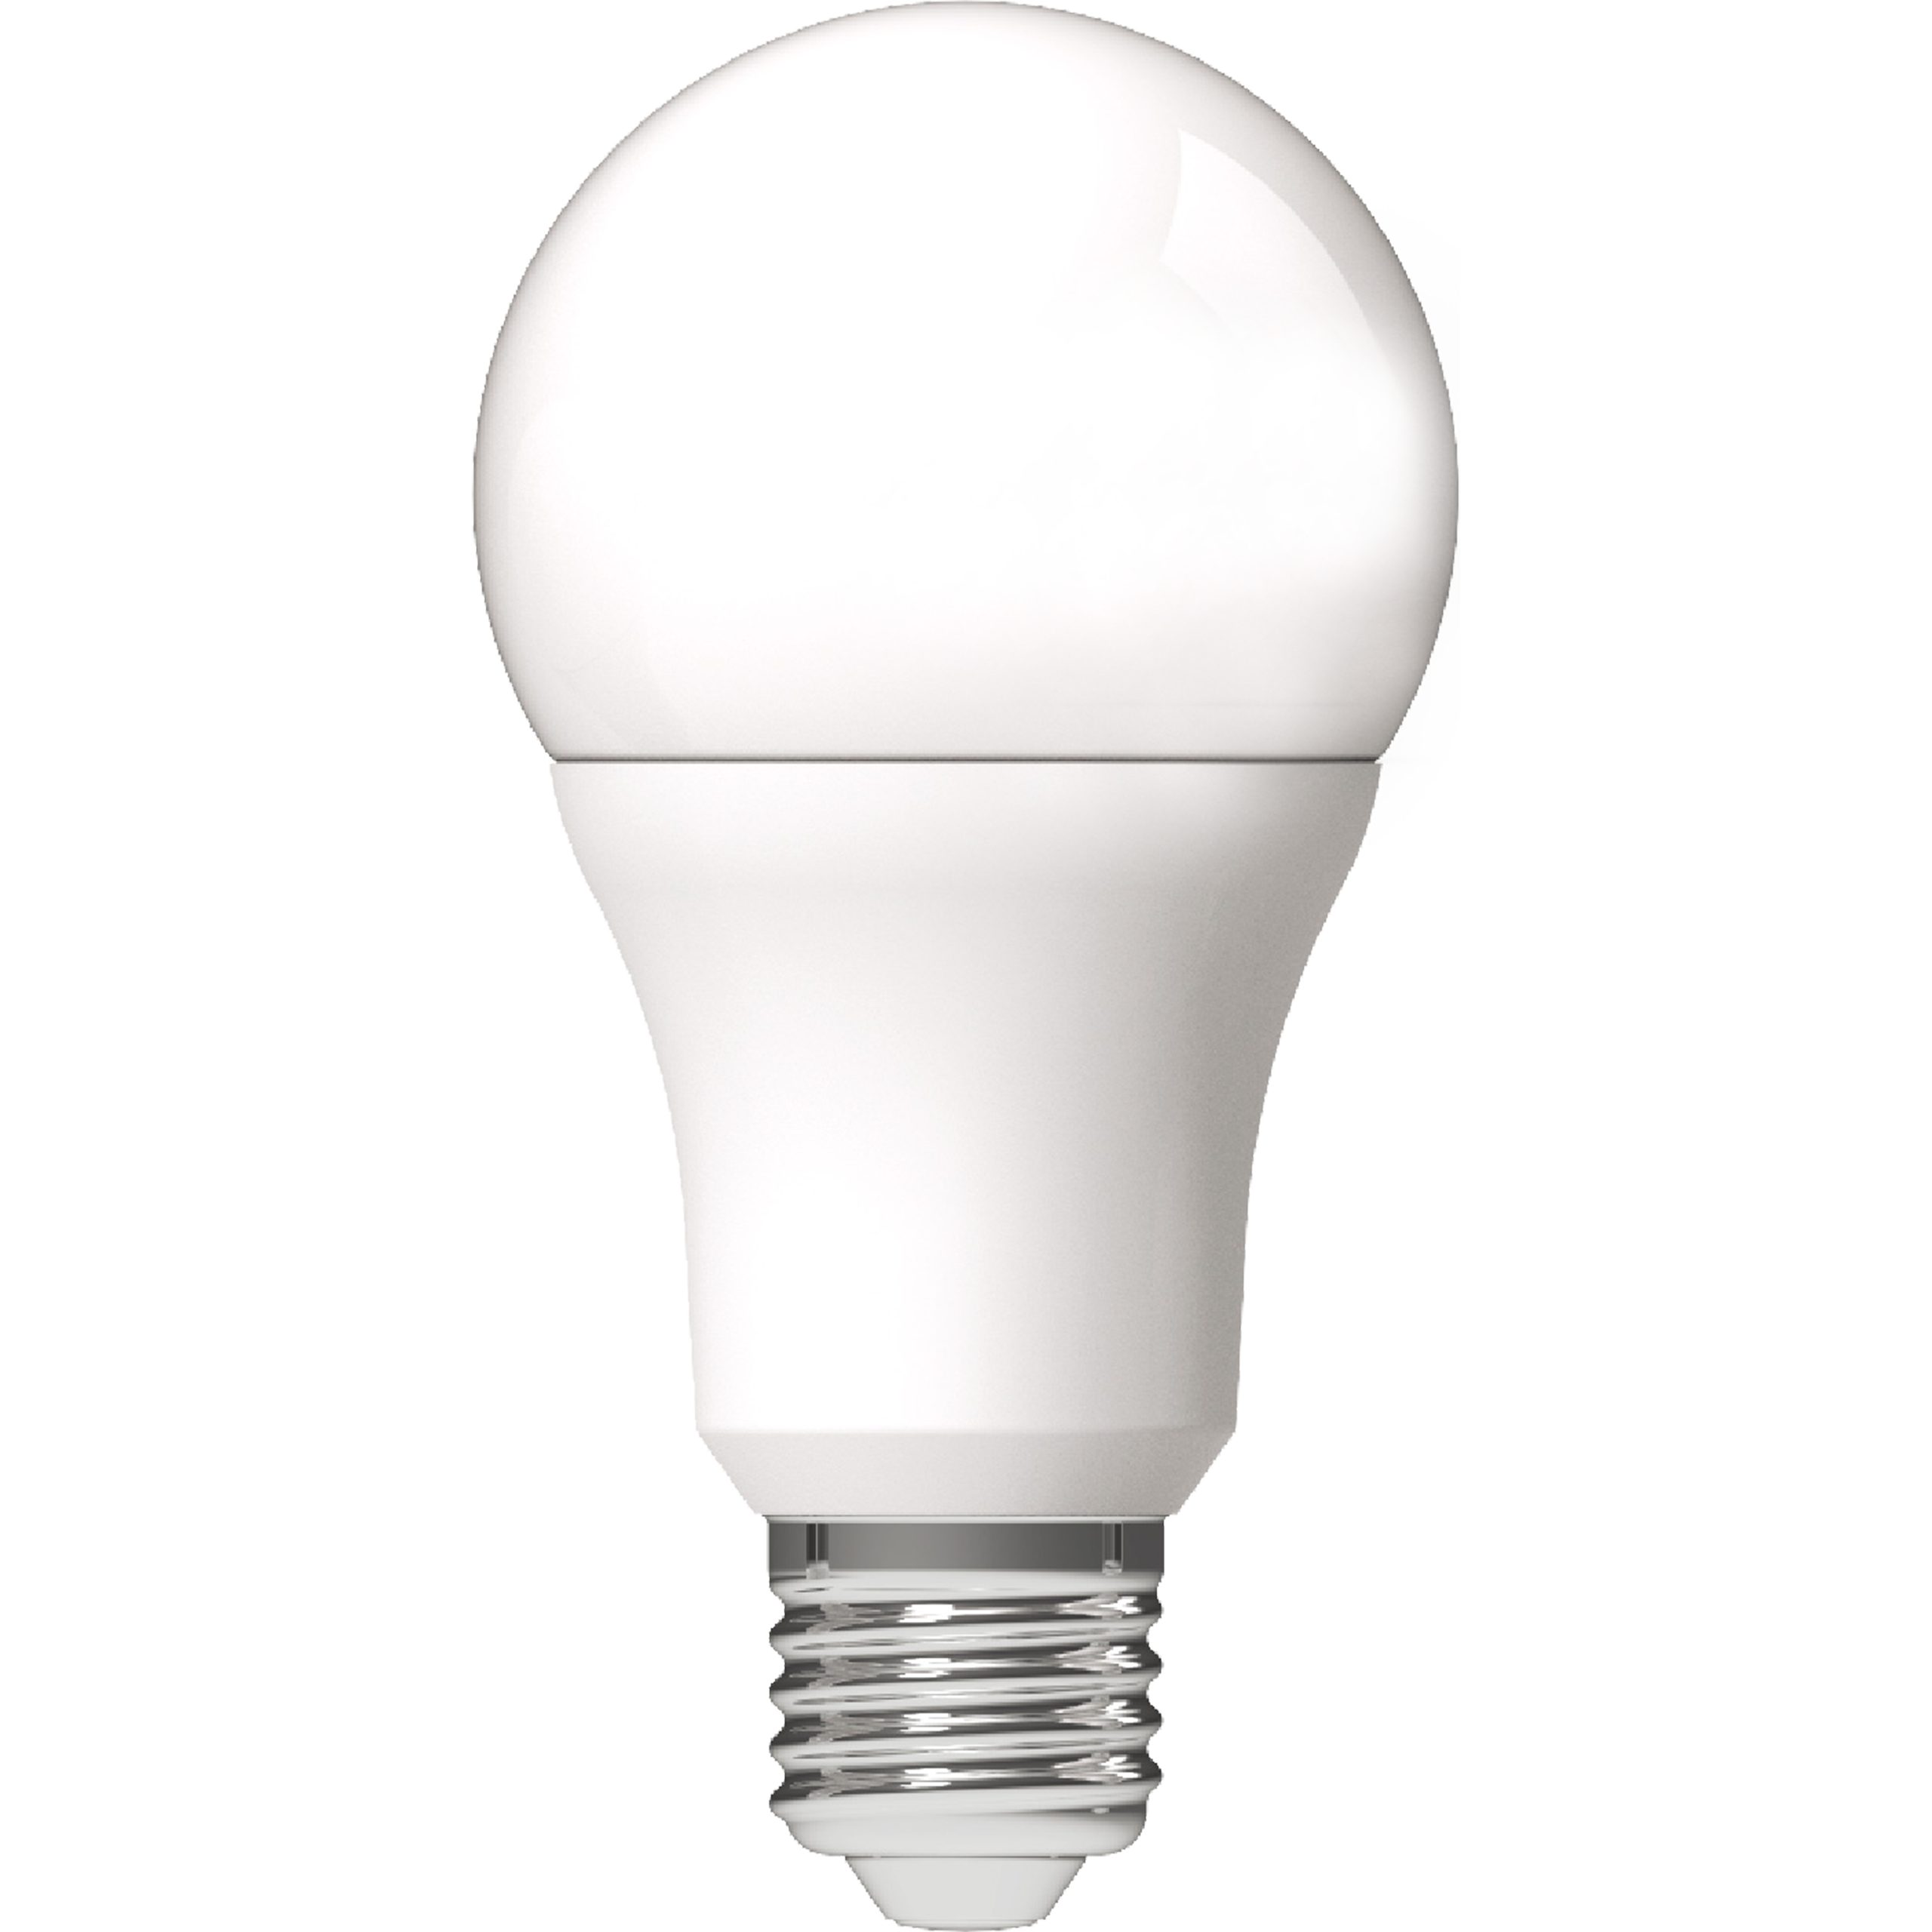 LED's light LED-Leuchtmittel 0620105 LED Glühbirne, E27, E27 9.5W warmweiß Opal A60